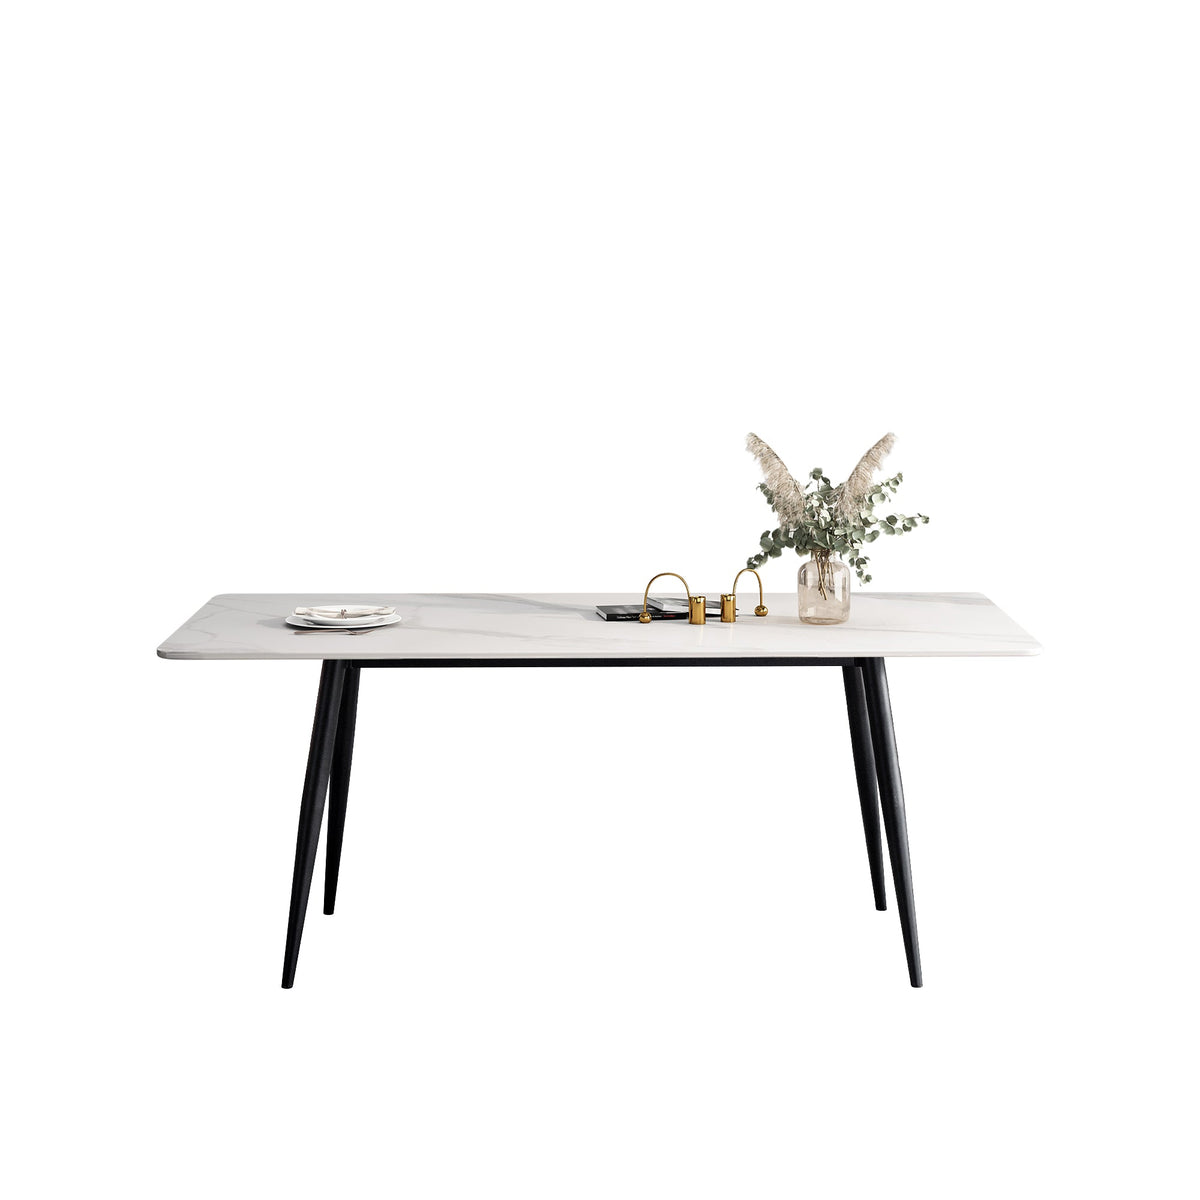 （限量現貨搶購中）BARZAN 岩板餐桌, A型腳座, 140*80 公分, 馬肚形